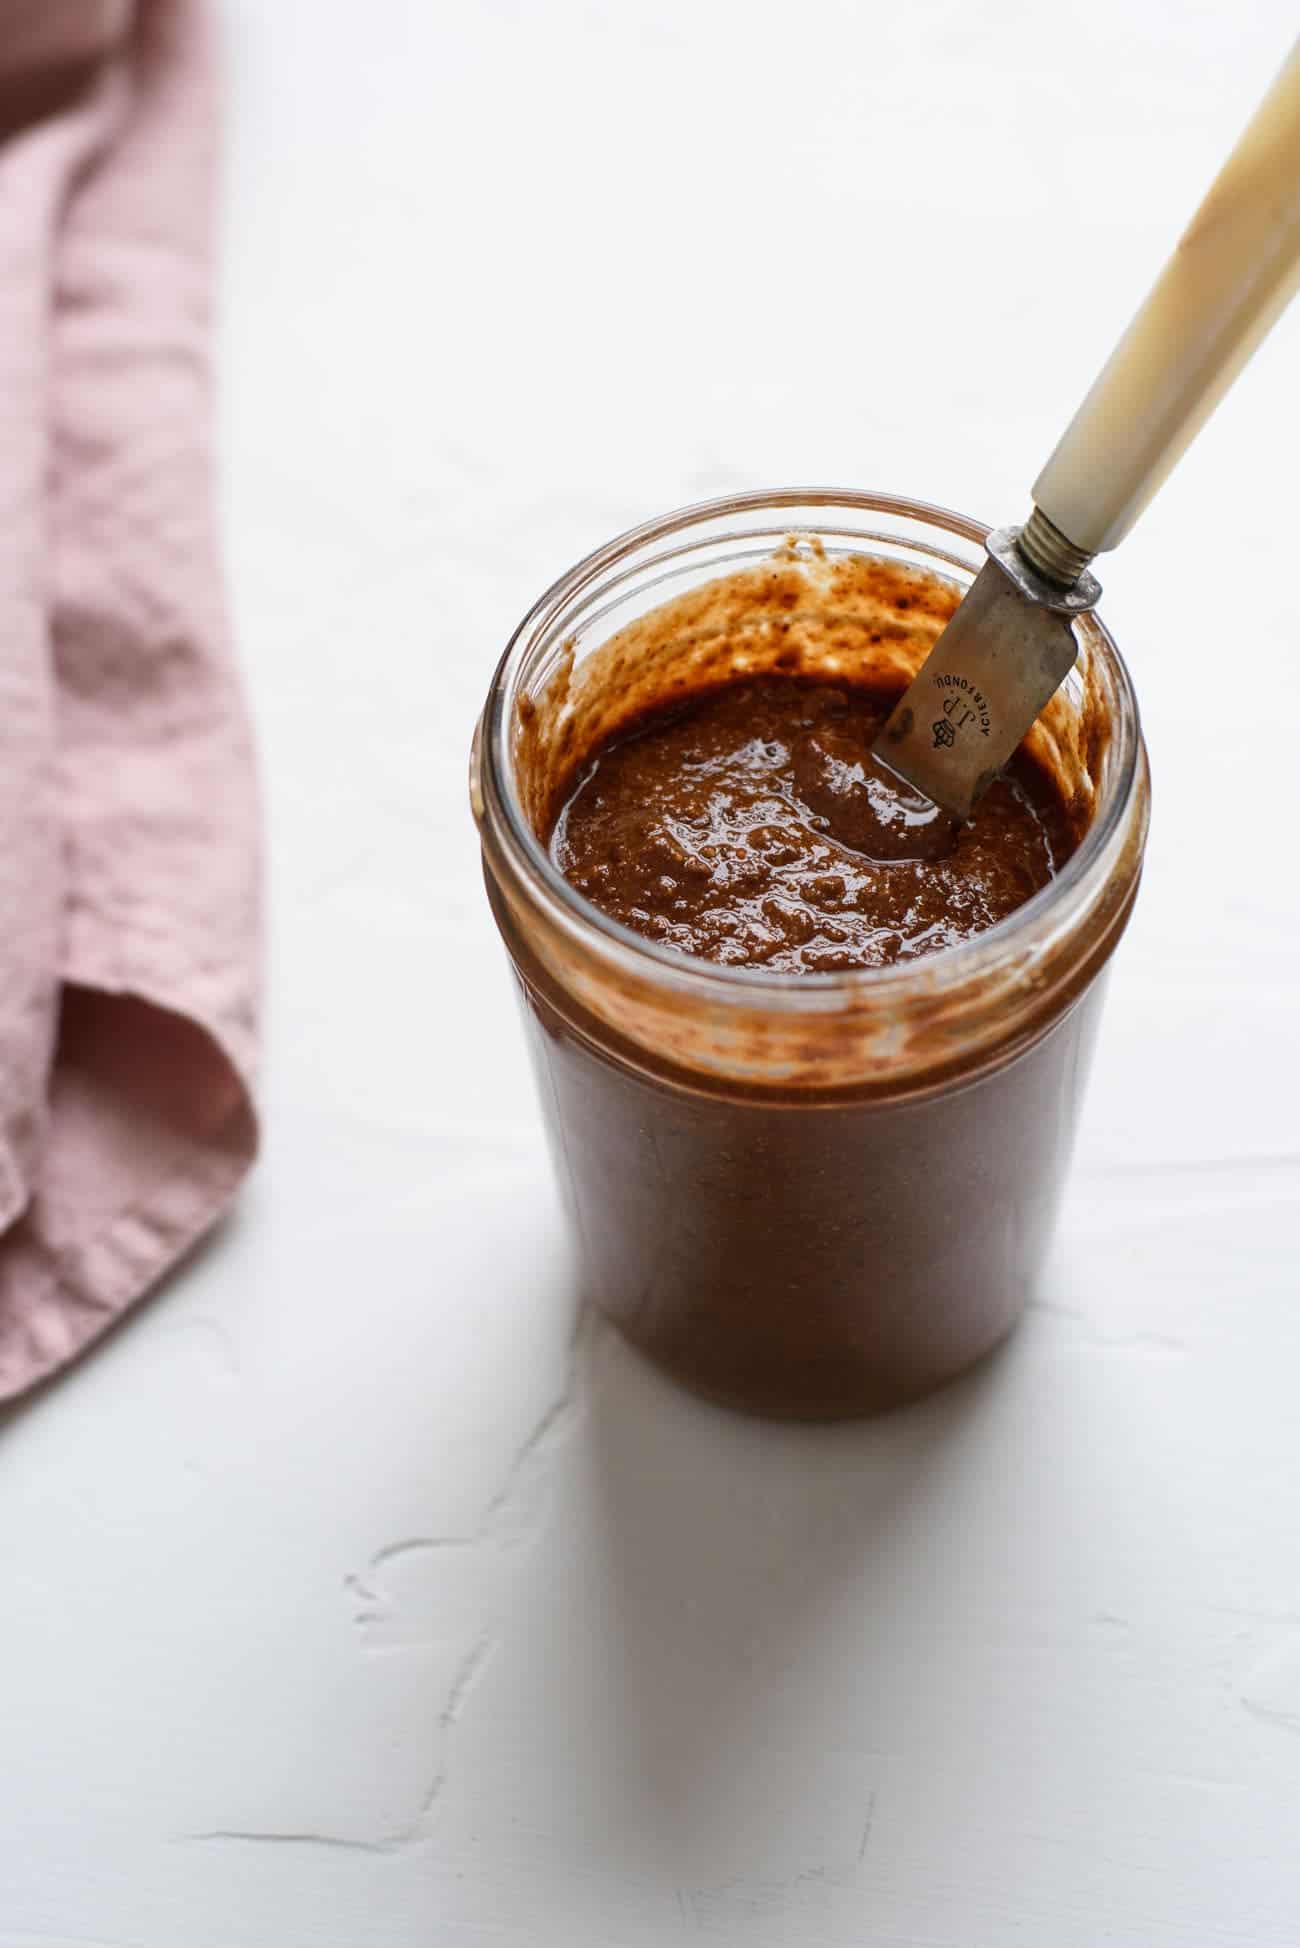 Homemade chocolate hazelnut spread (DIY Nutella) spread in a mason jar